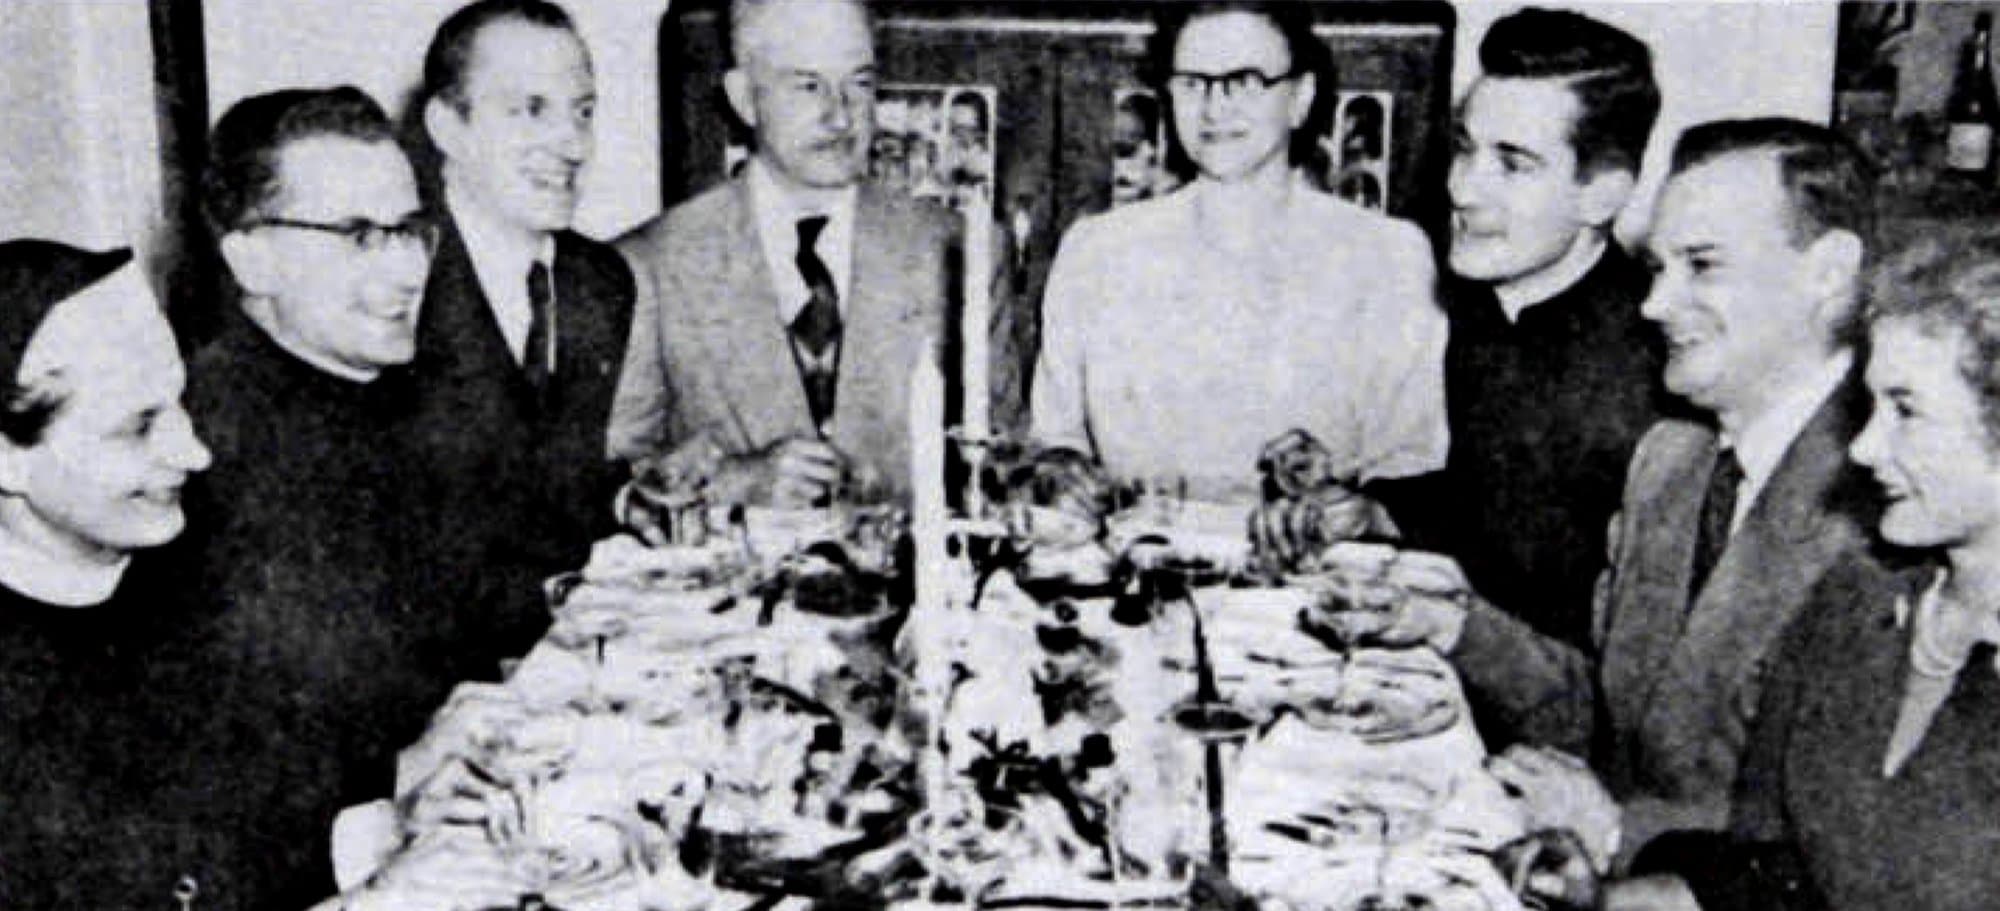 Jacques Grand'Maison, en haut à droite, accompagné de sa famille dans les années 1950, sur une photo de Gonzague Allaire, publiée dans le magazine VO, disponible sur le site de la Bibliothèque et Archives nationales du Québec.